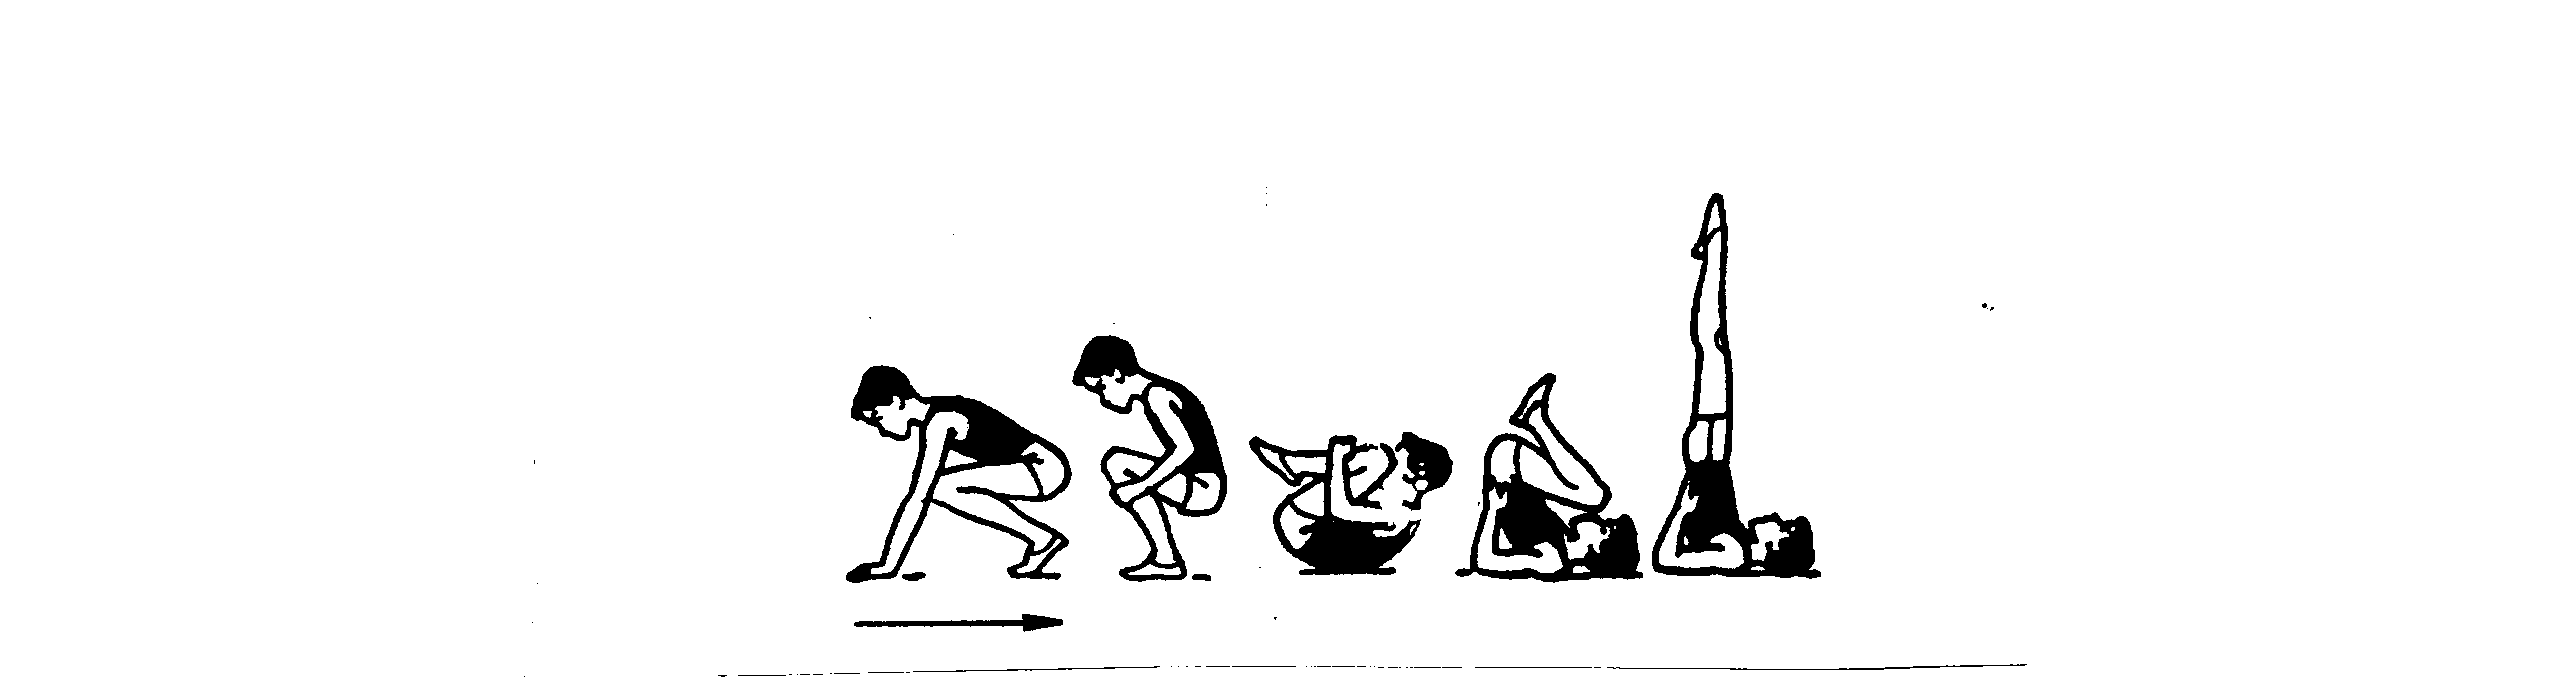 Гимнастика стойка на лопатках техника выполнения